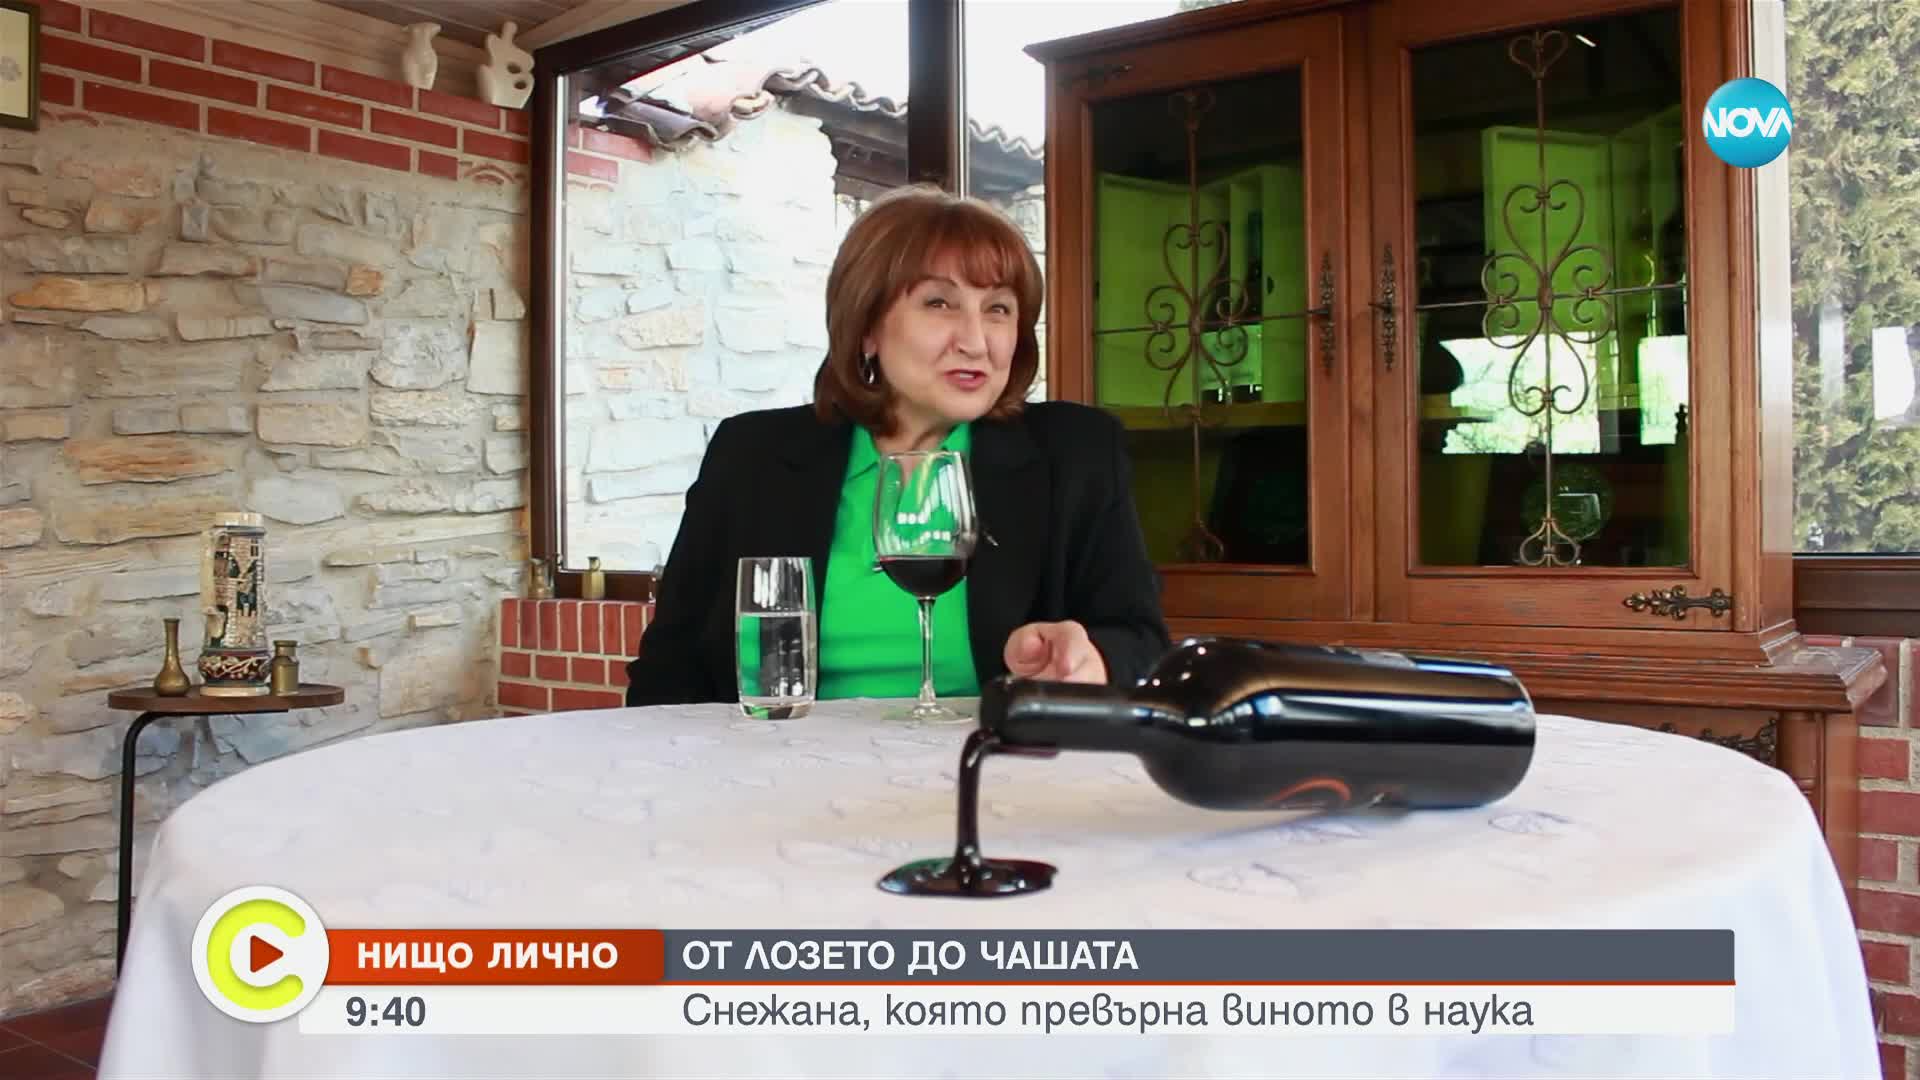 "Нищо лично": Българката, която превърна видеото в наука